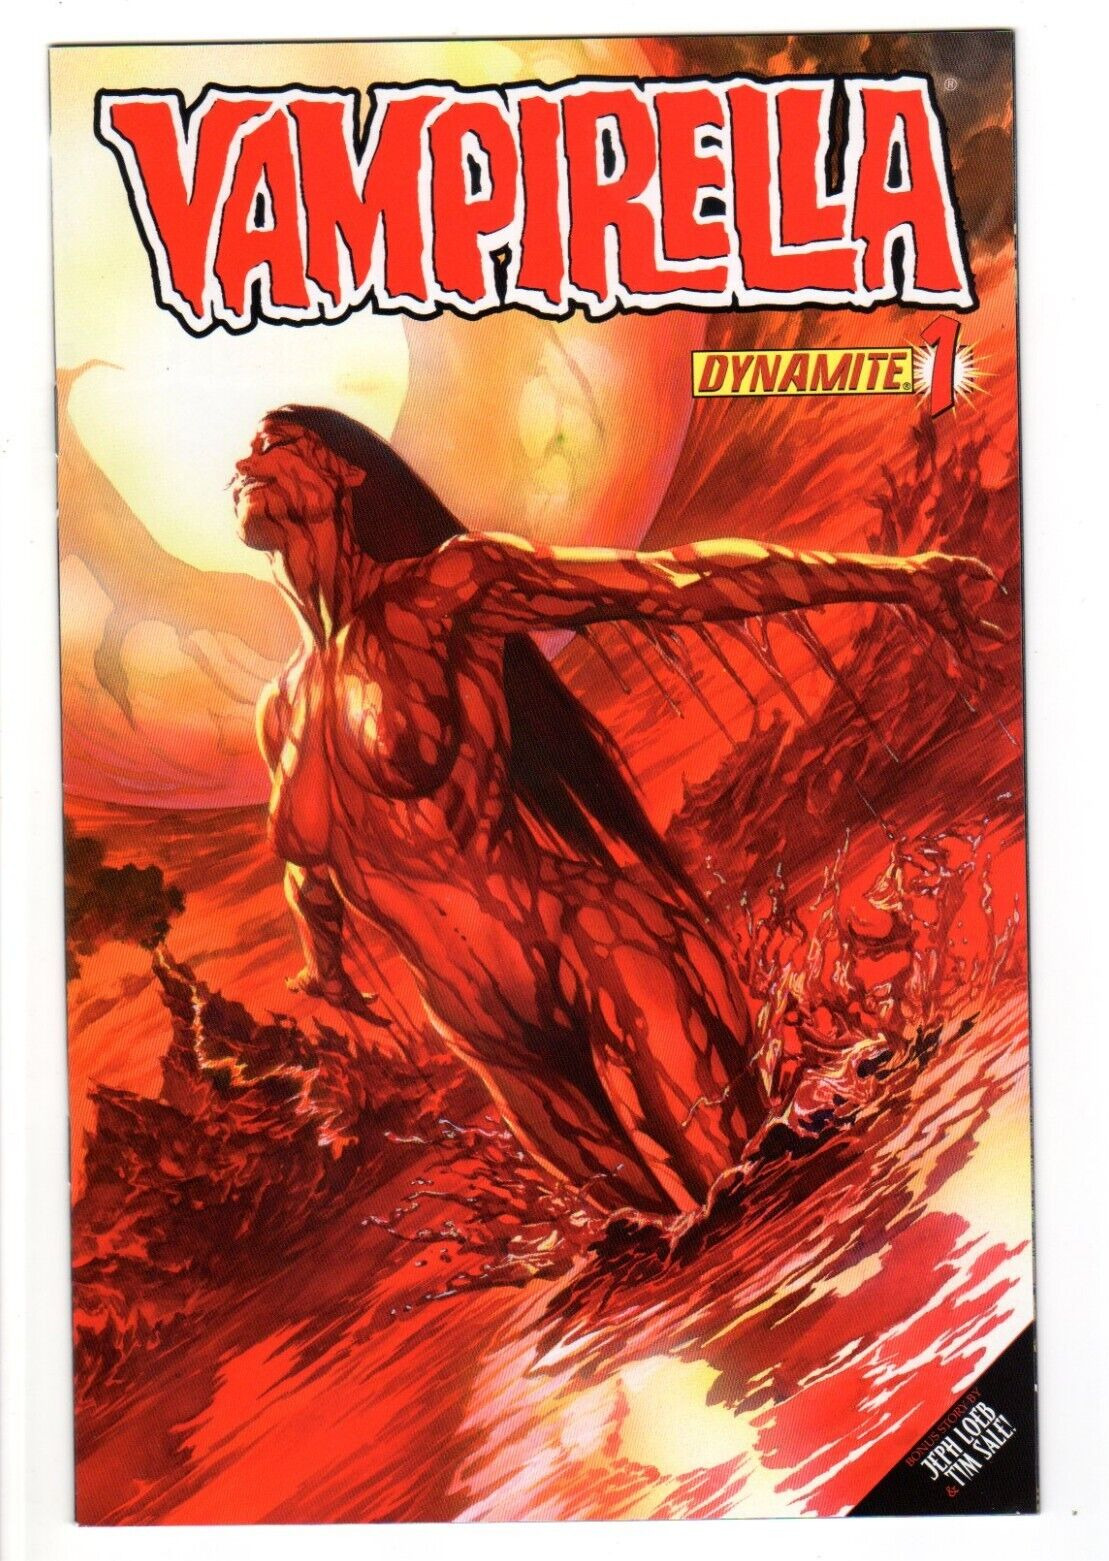 Vampirella #1 (Dynamite 2010) Alex Ross variant VF